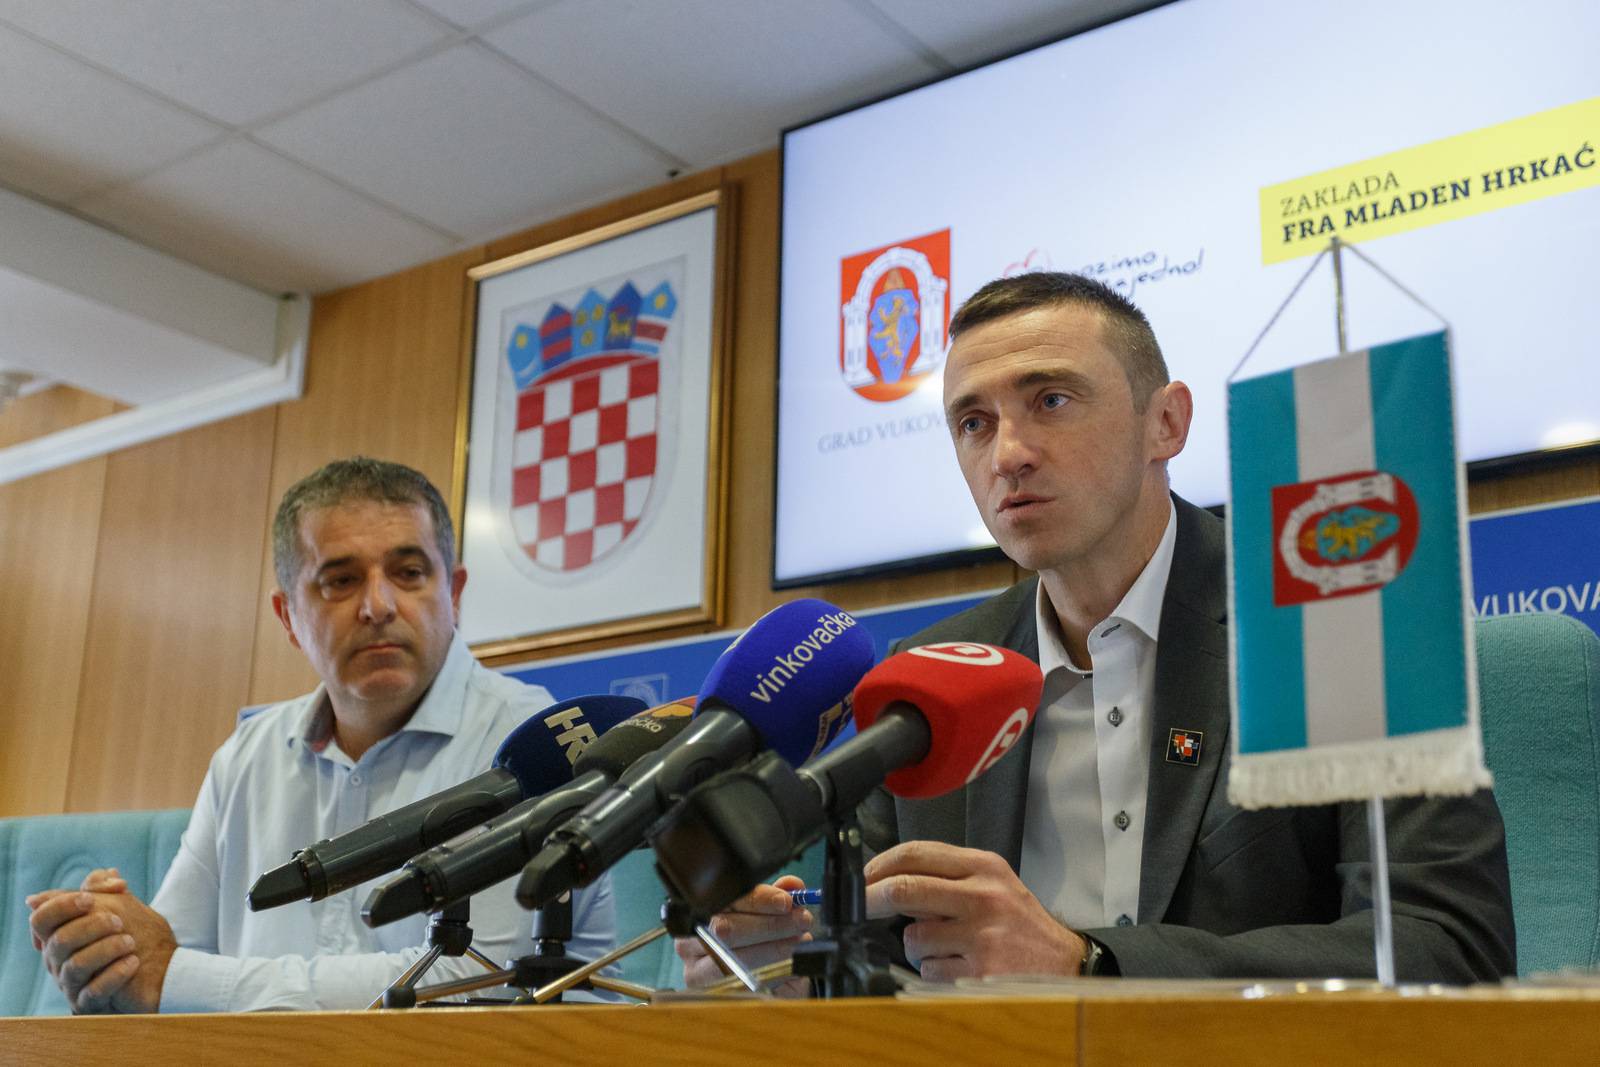 'Dom će imati mjesta za 220 ljudi koji se liječe u Zagrebu'